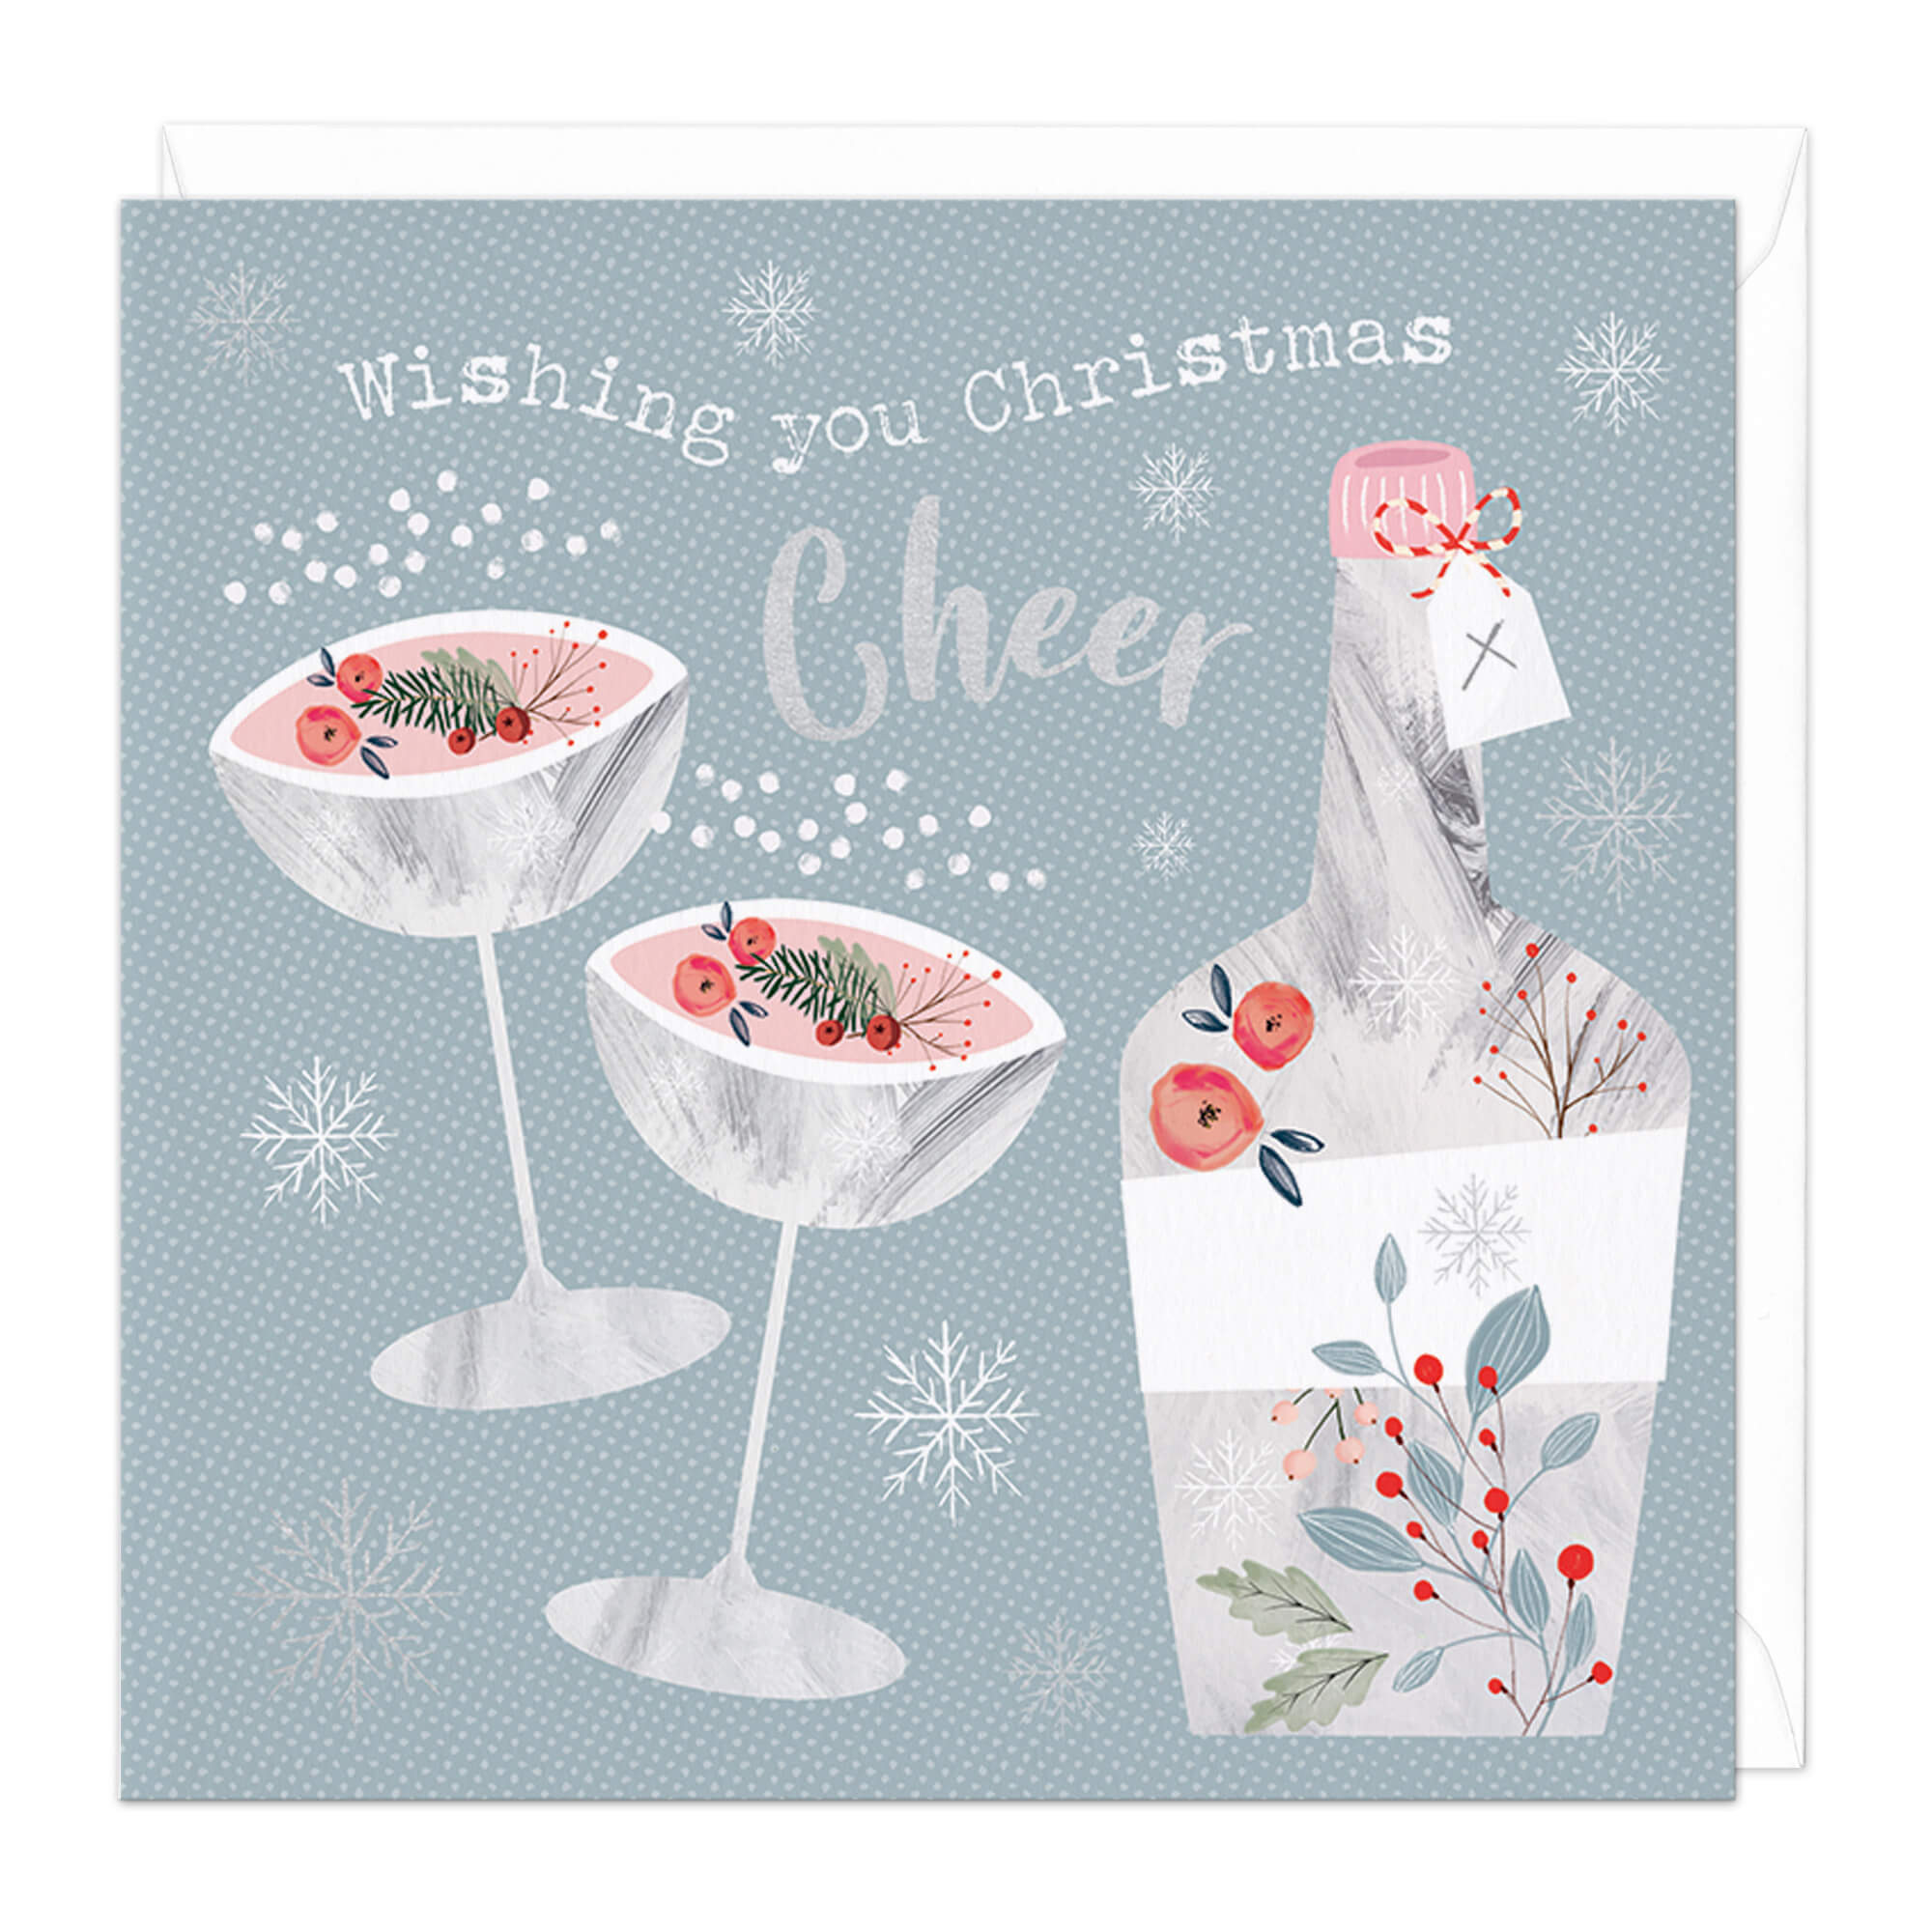 An image of Wishing You Christmas Cheer Christmas Card Whistlefish